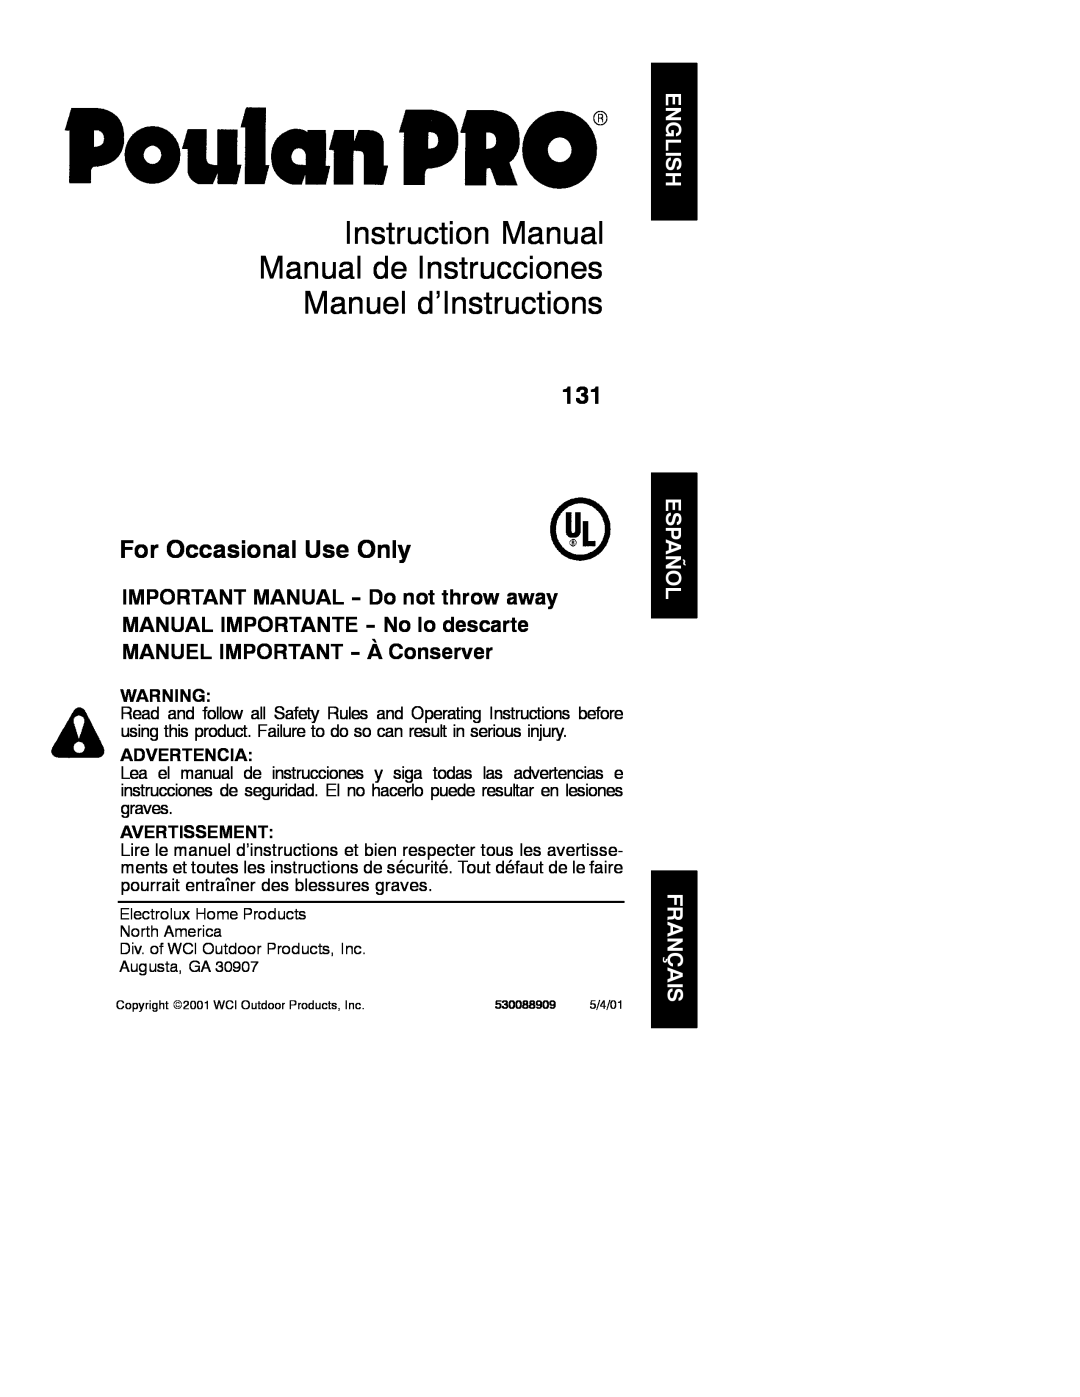 Poulan 2001-05, 530088909 instruction manual Instruction Manual Manual de Instrucciones Manuel d’Instructions, Advertencia 